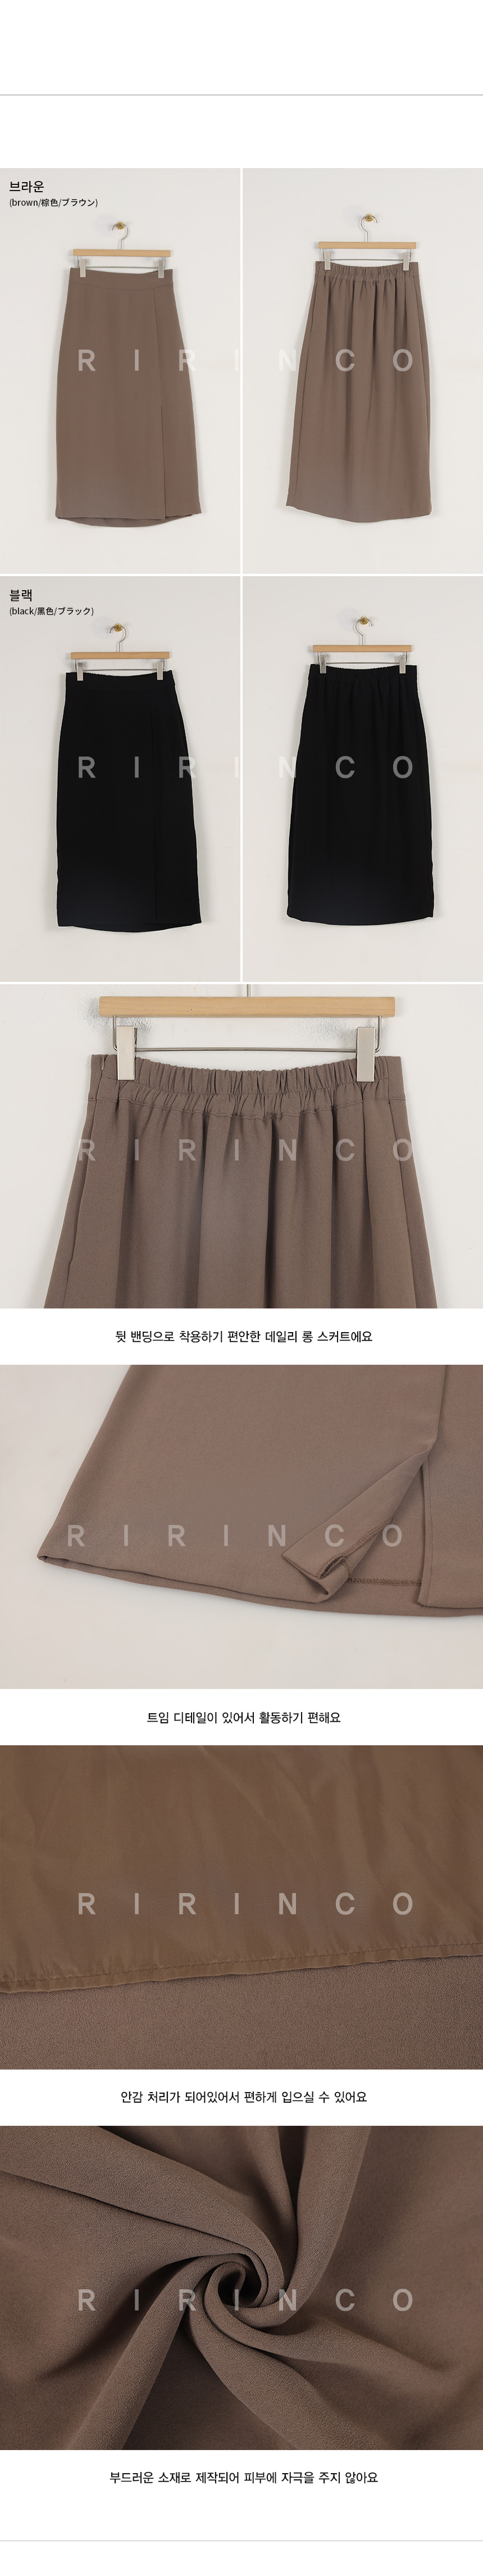 RIRINCO ベーシックサイドスリットバックゴムロングスカート